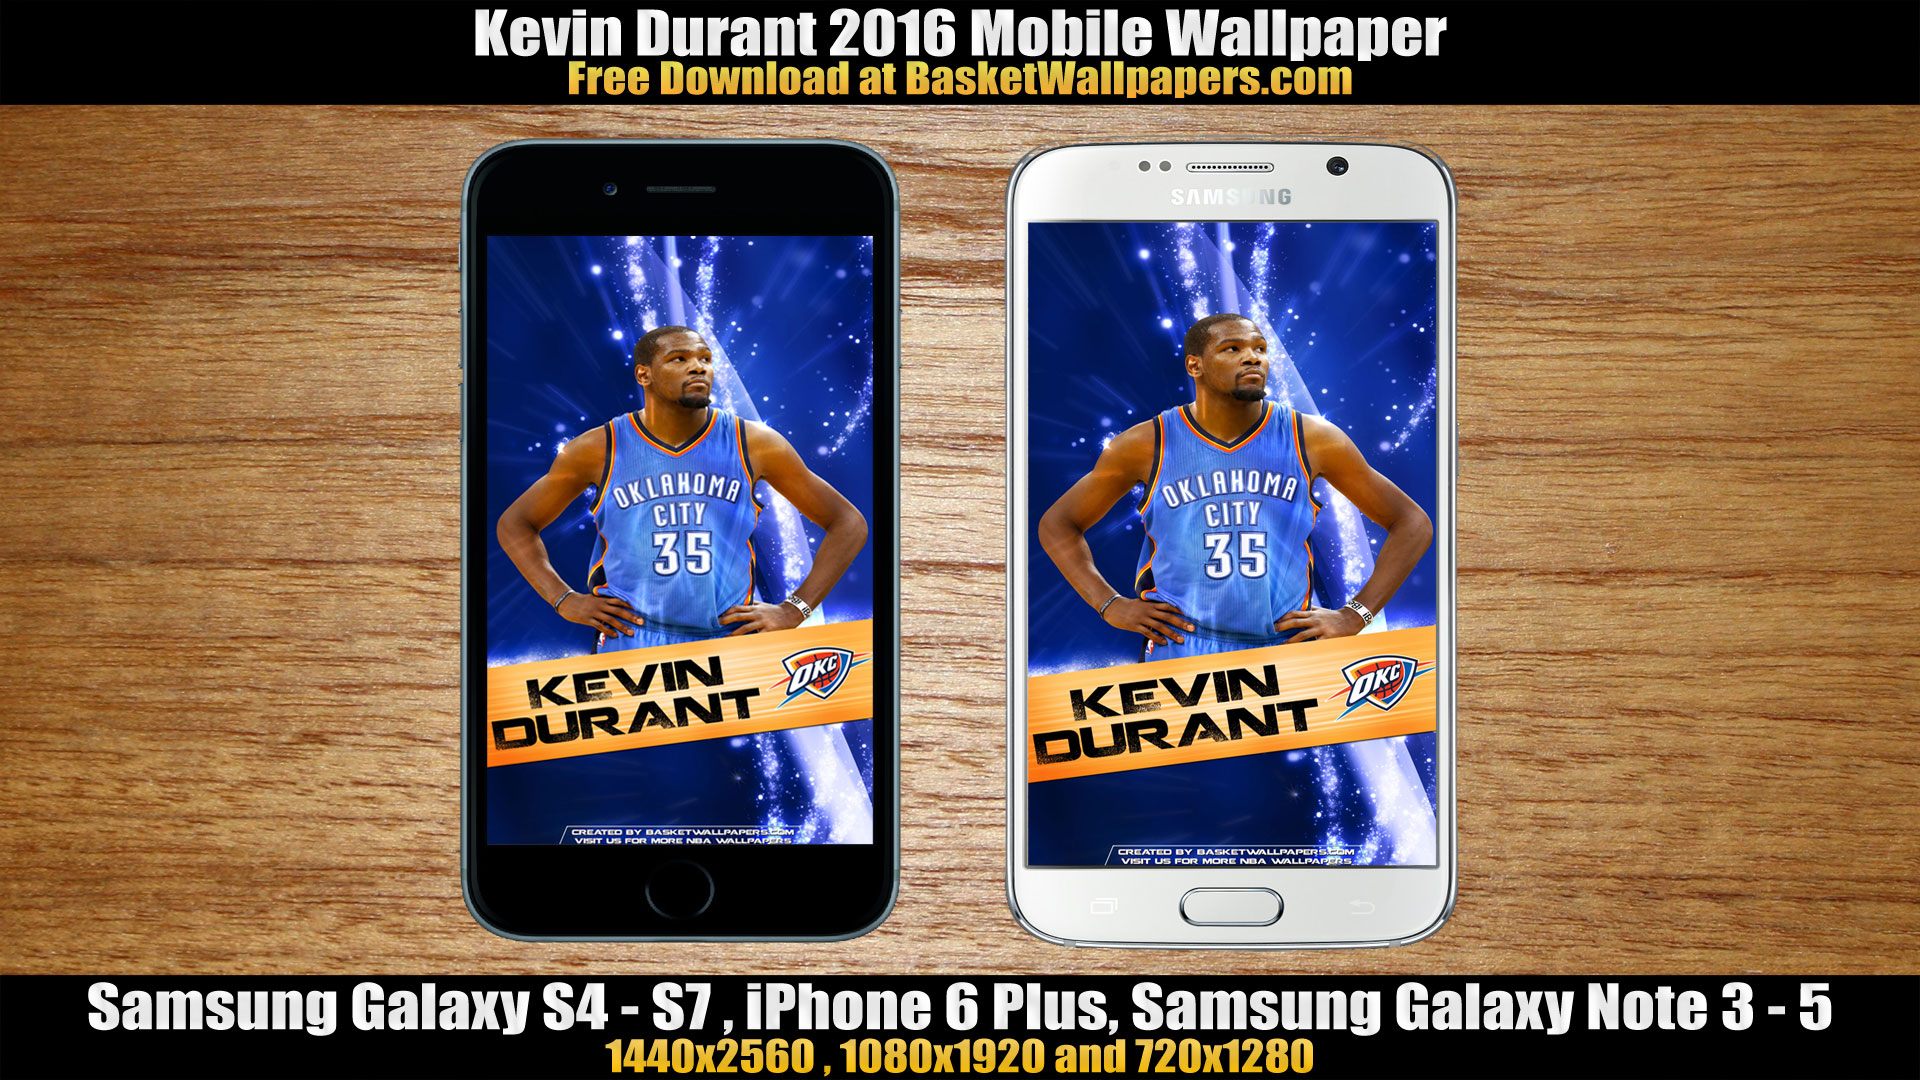 Kevin Durant Okc Thunder Mobile Wallpaper Basketball